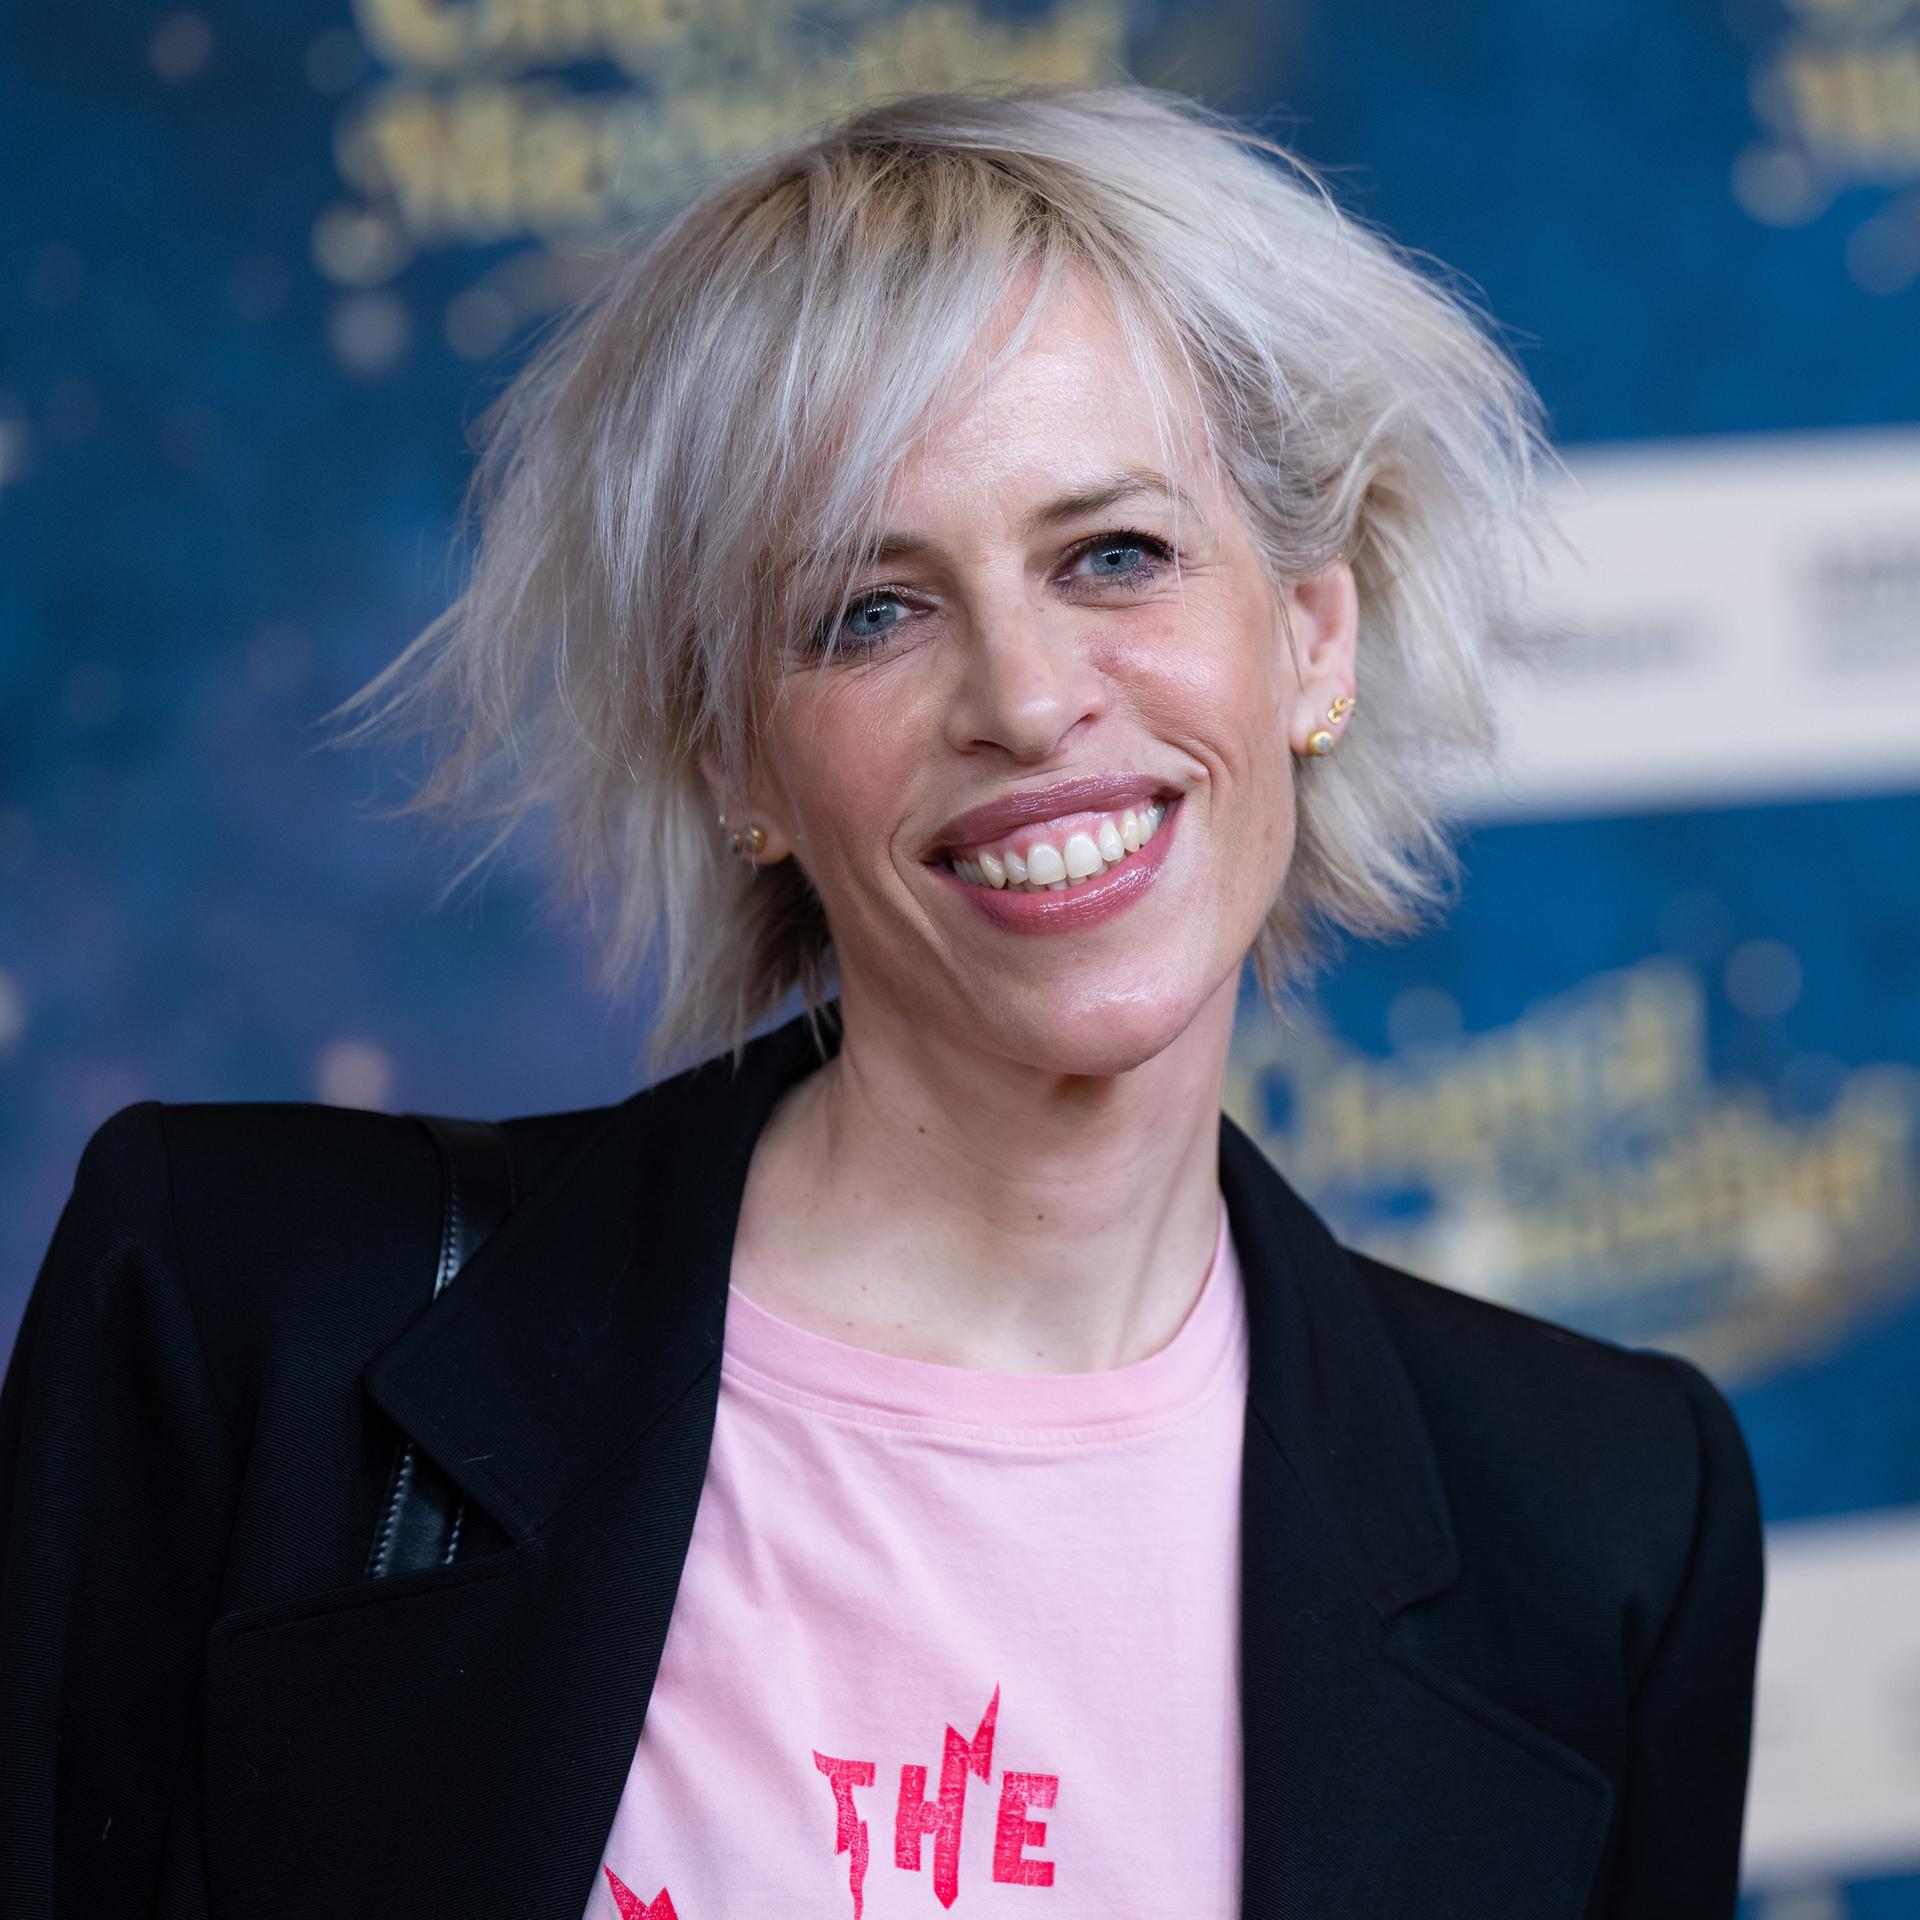 Katja Eichinger, Produzentin, kommt im Mathäser Filmpalast zu der Premiere des Films Chantal im Märchenland. Sie trägt ein rosa Shirt mit Aufdruck und eine schwarze Jacke.